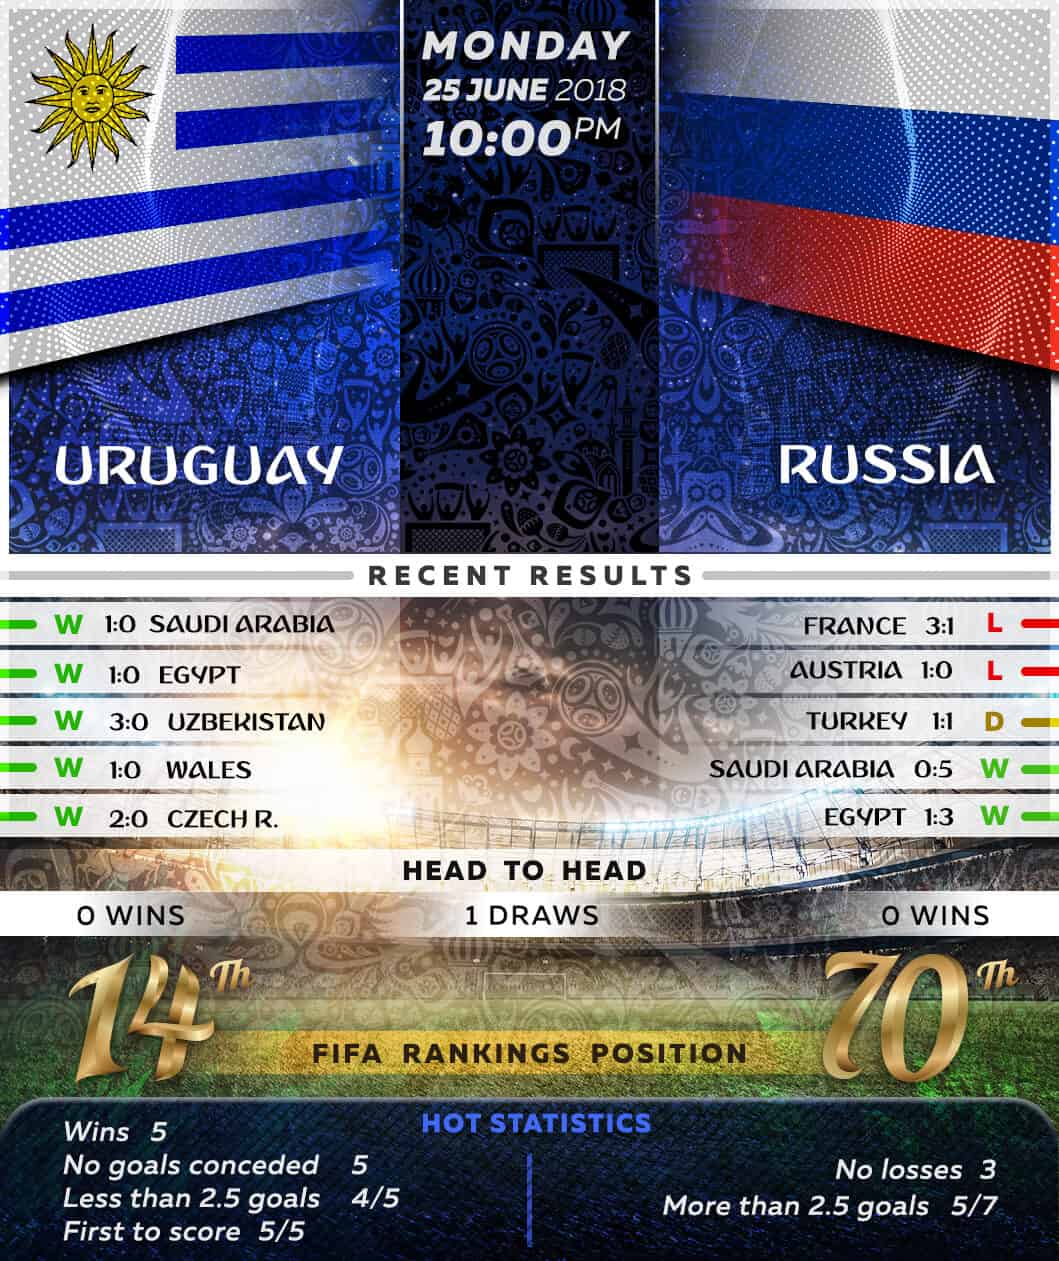 Uruguay vs Russia 25/06/18